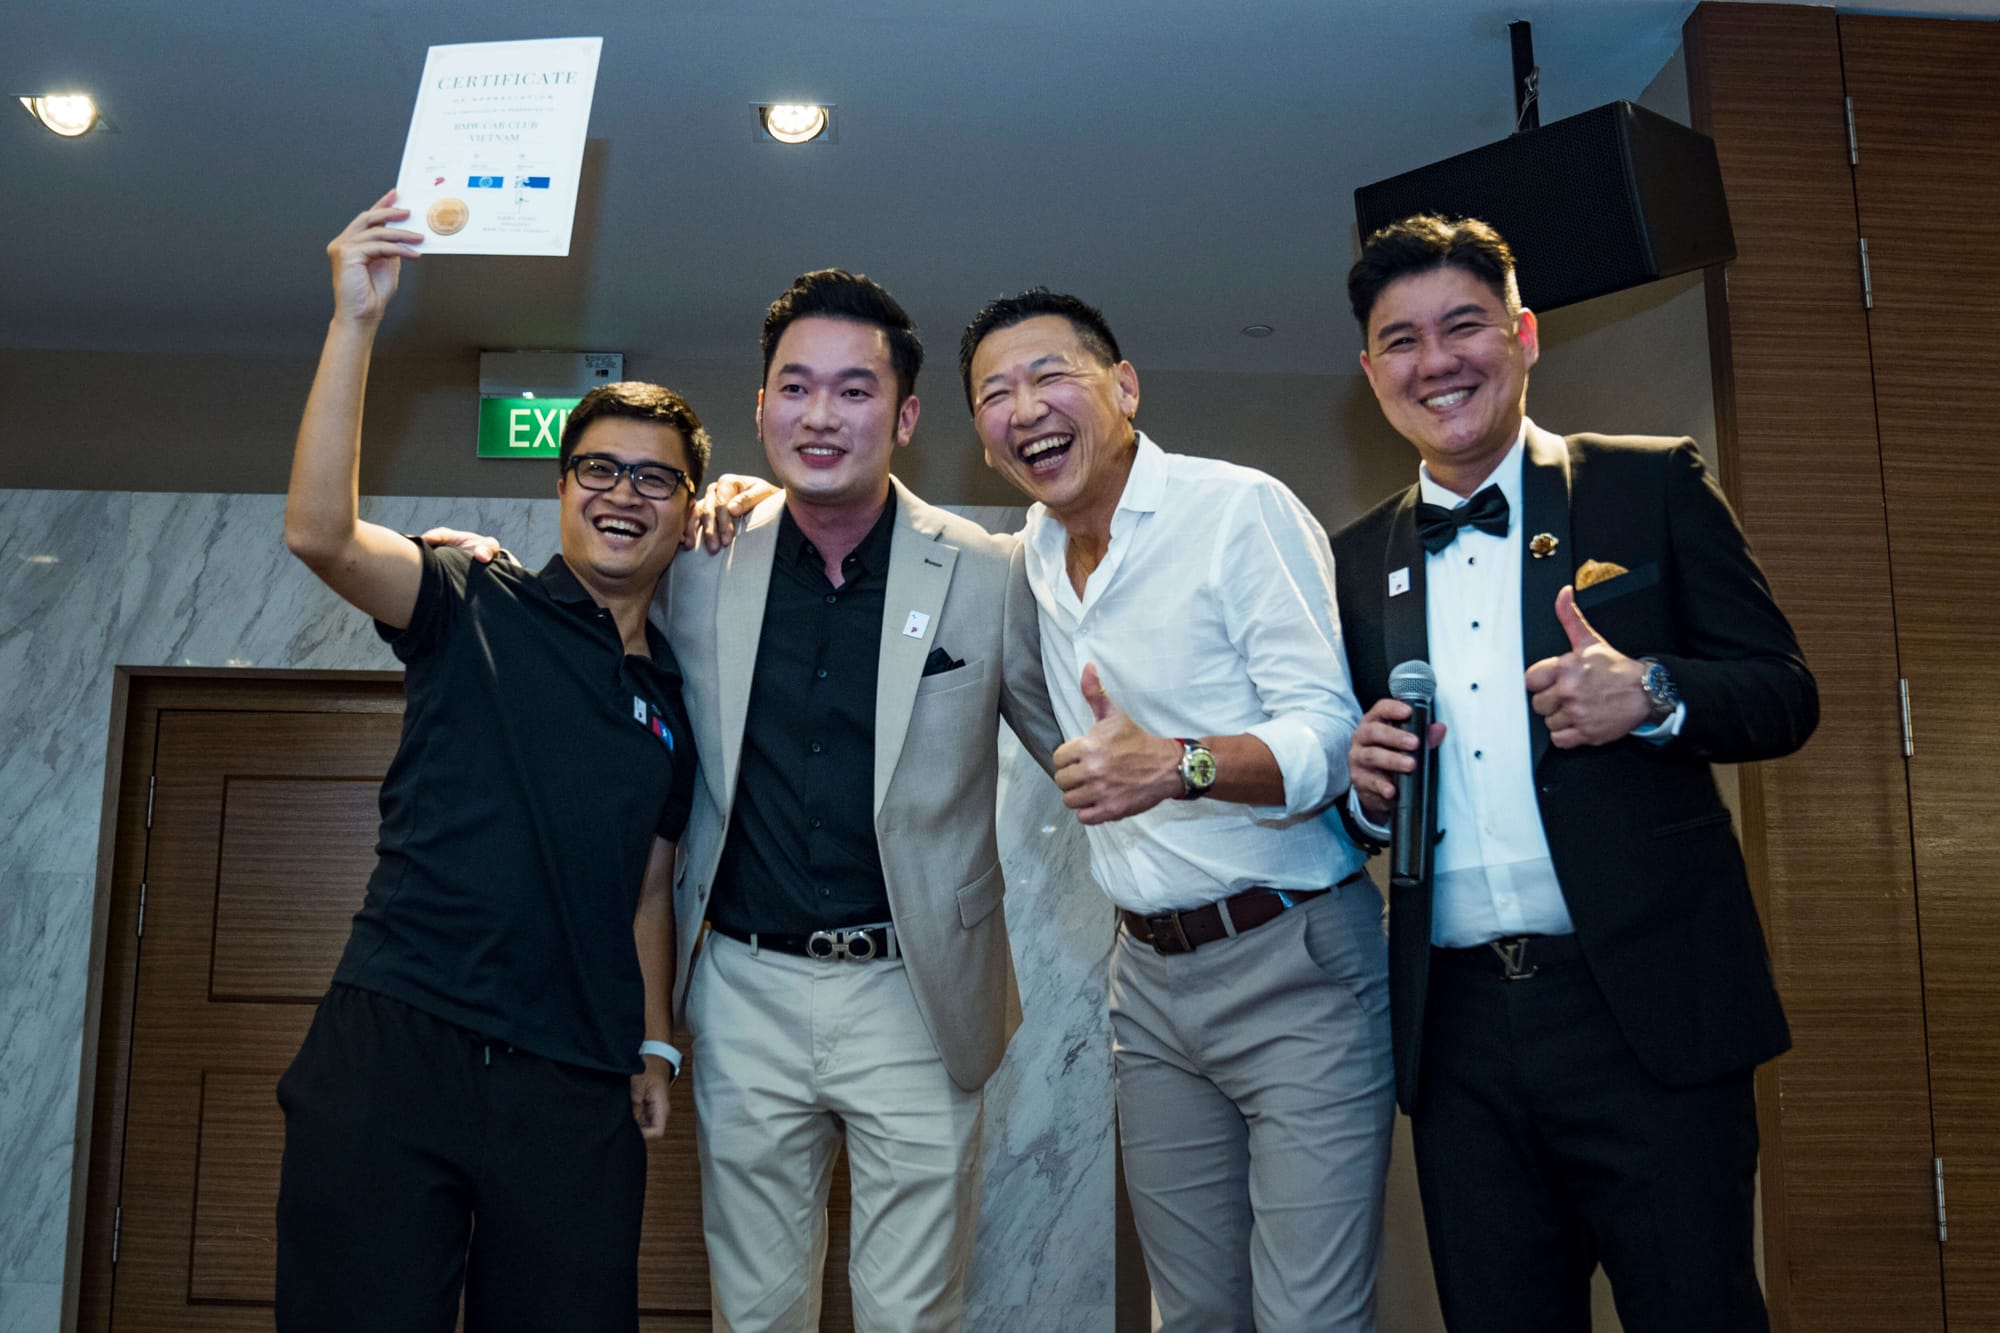 BMW Car Club Vietnam tham gia cuộc họp ban điều hành thường niên của BMW Clubs Asia năm 2023 tại Singapore